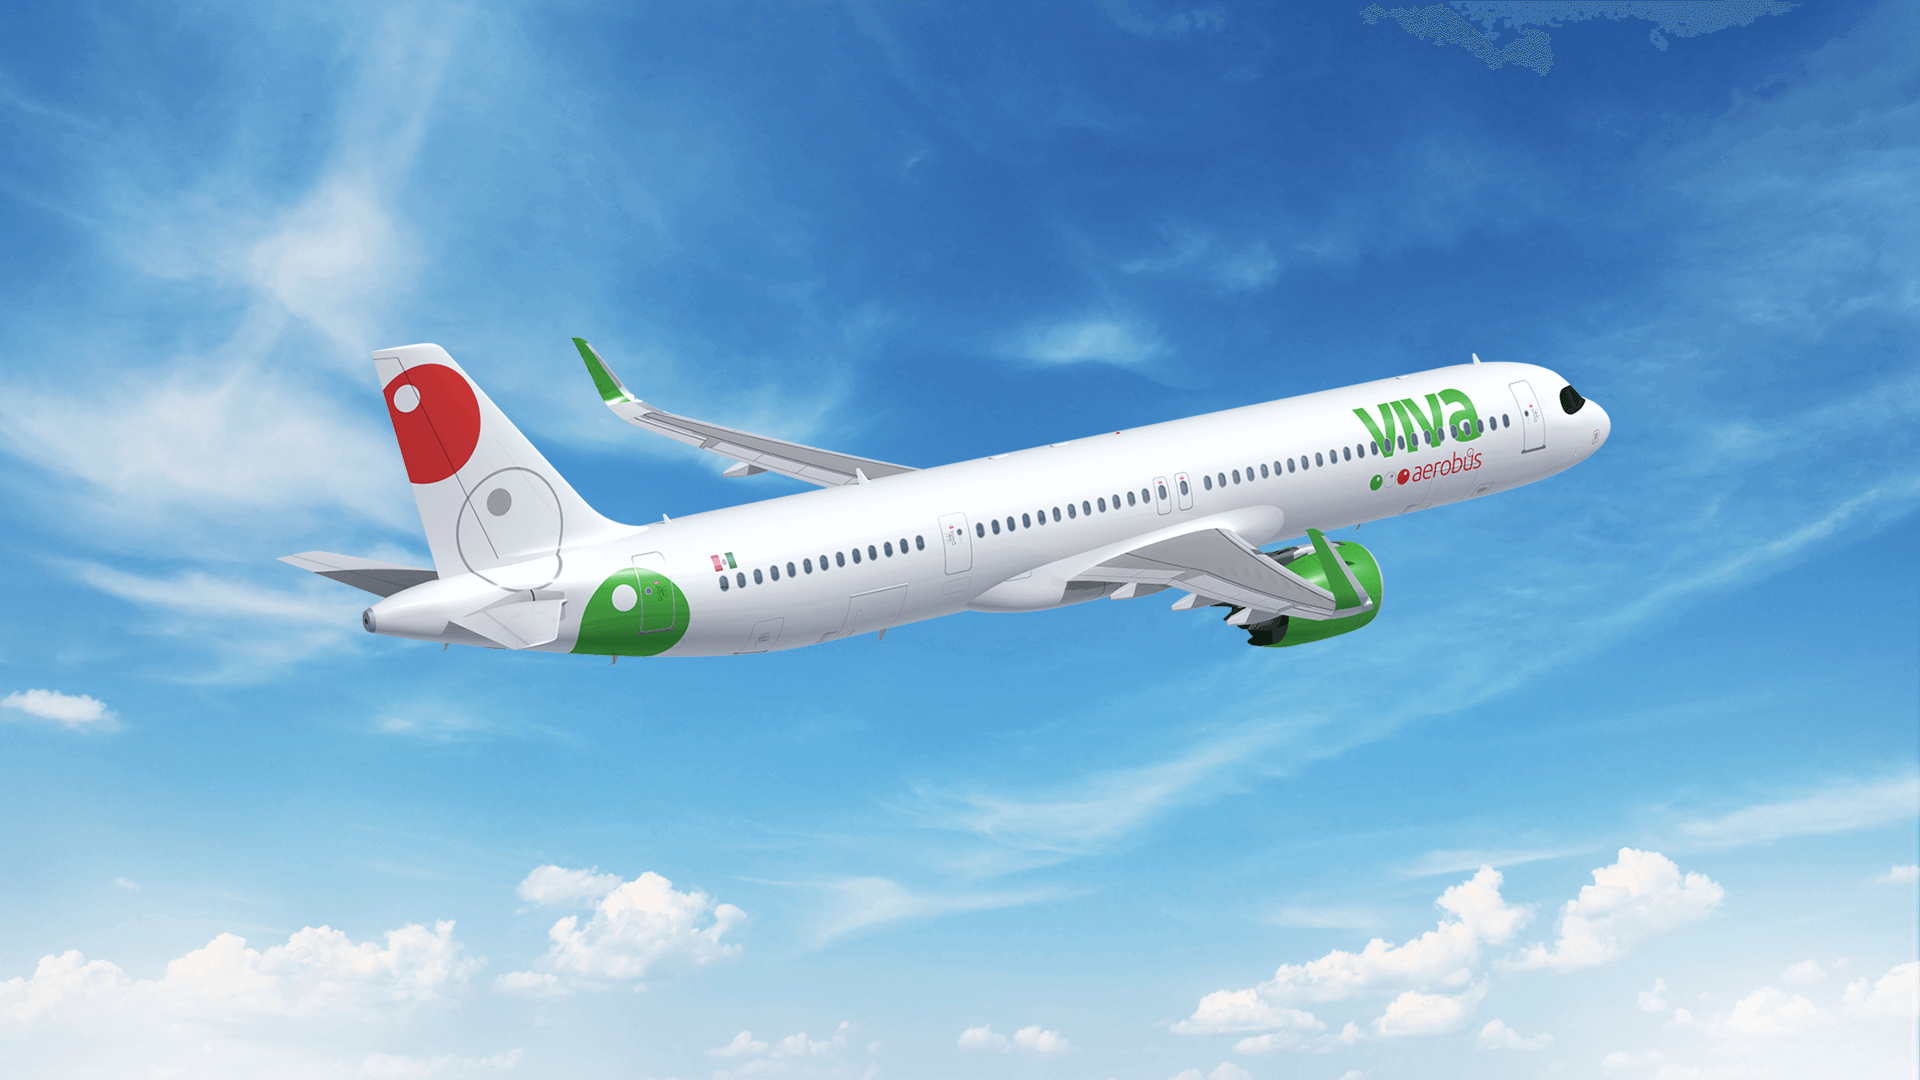 Viva Aerobus, Aerolínea mexicana, informa sobre la suspensión de operaciones de la aerolínea colombiana Viva Air